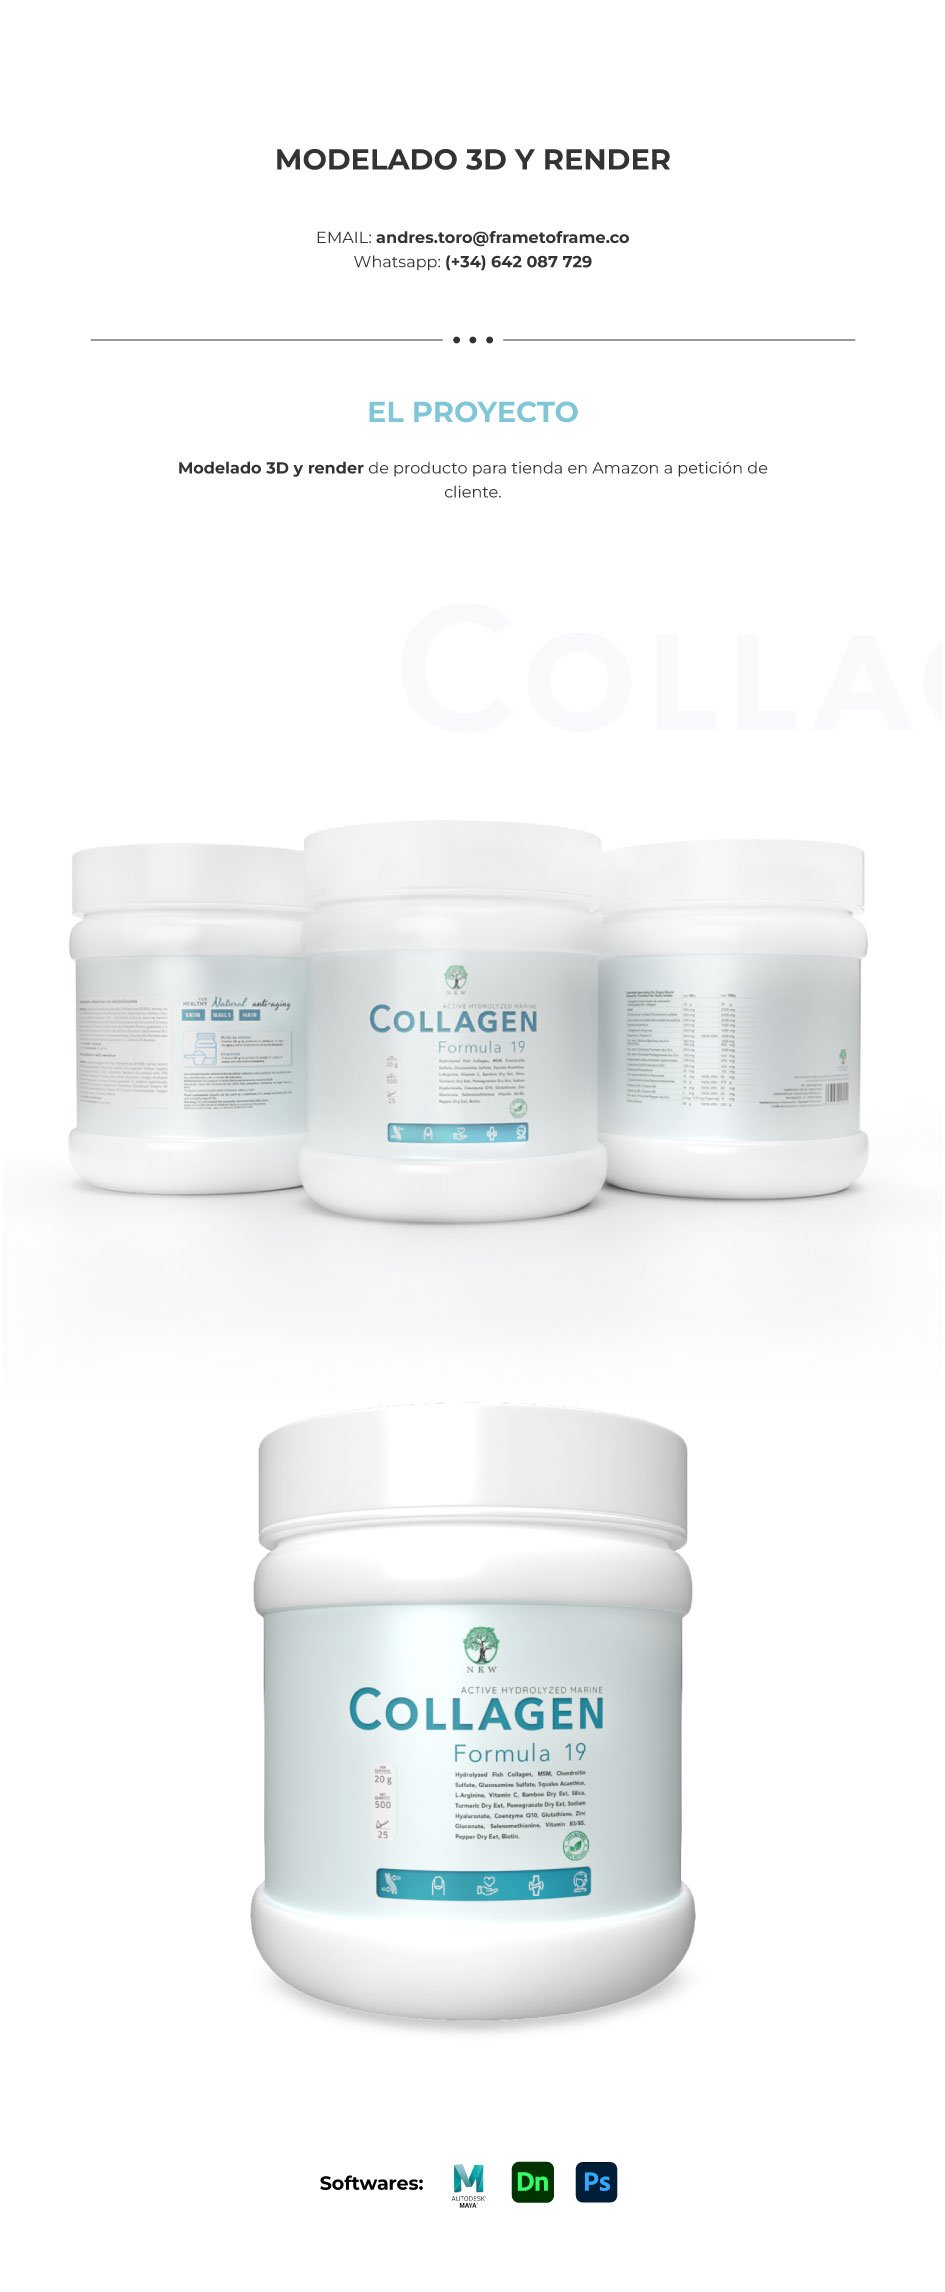 Se presenta el modelado 3D del producto de collageno